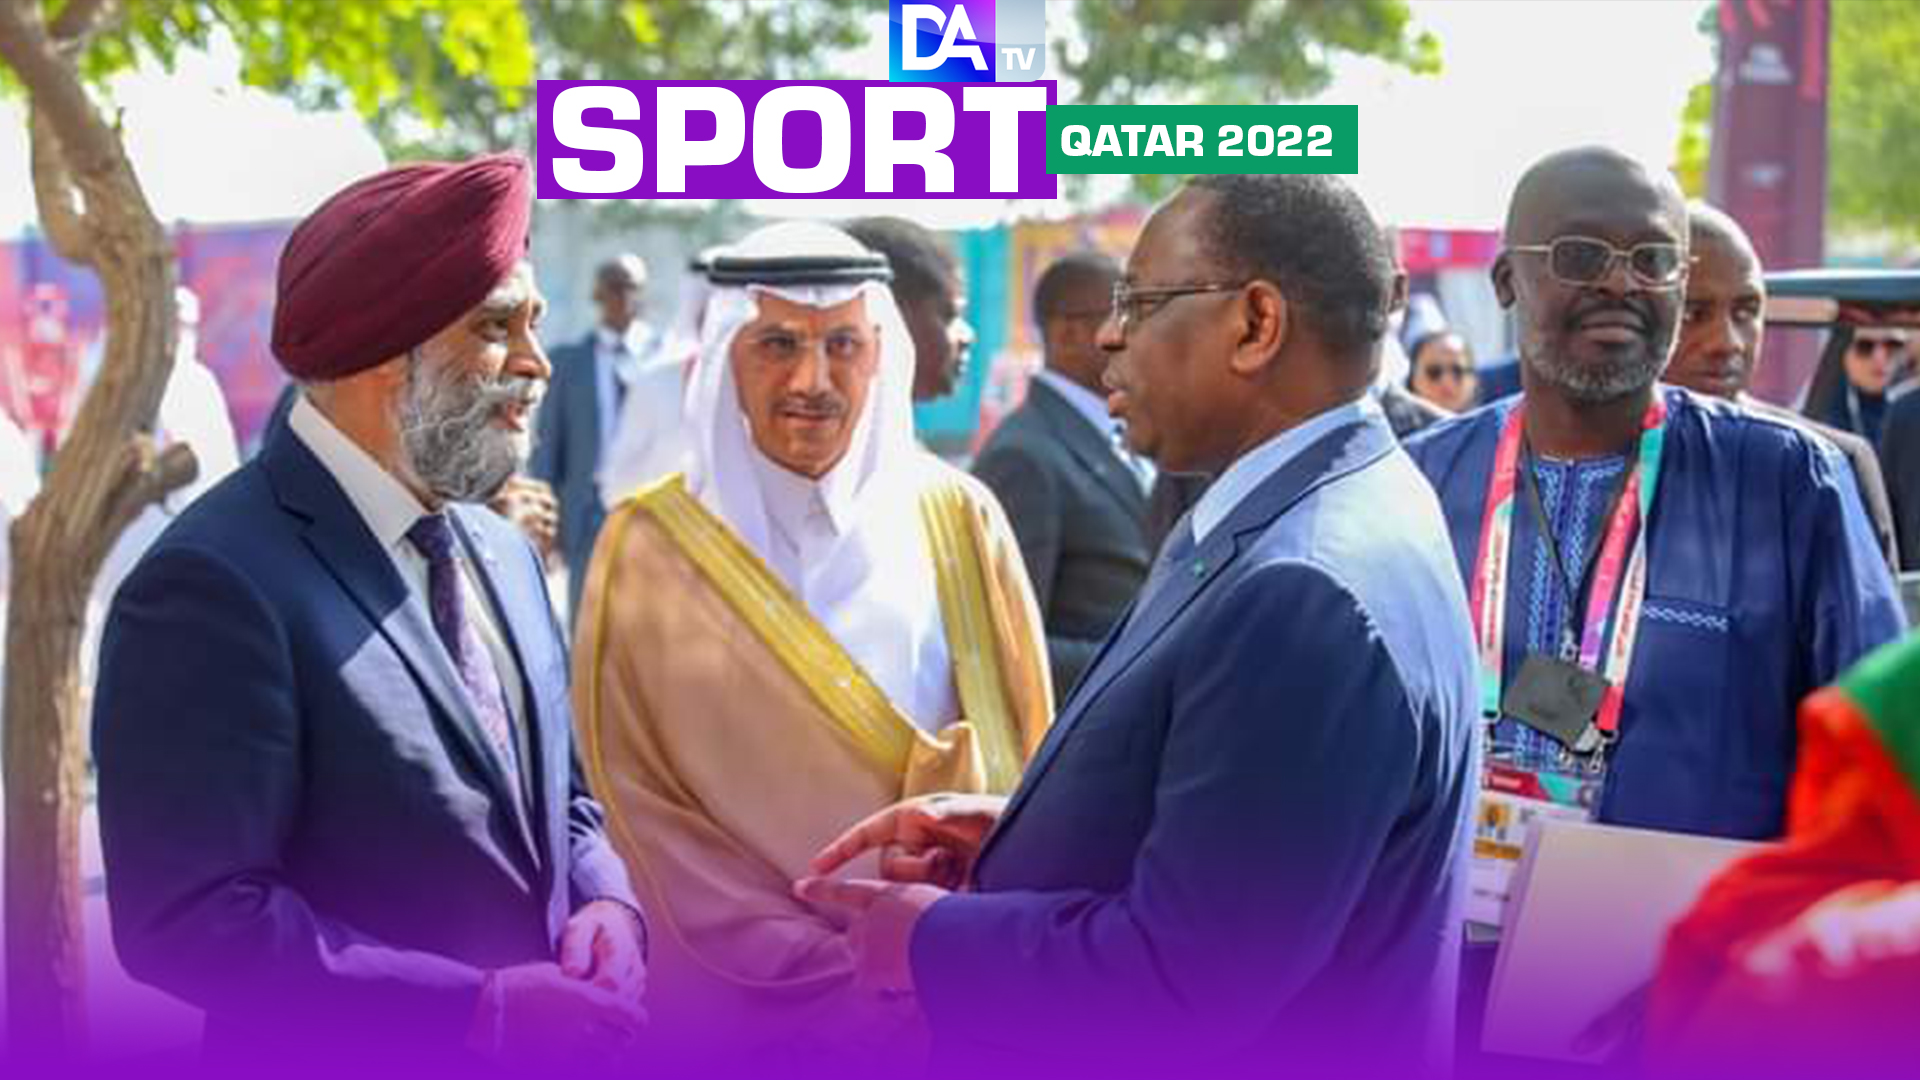 Qatar 2022 : Le chef de l'État prend part au lancement de la campagne "Scoring The Goals" et à un panel sur les ODD.